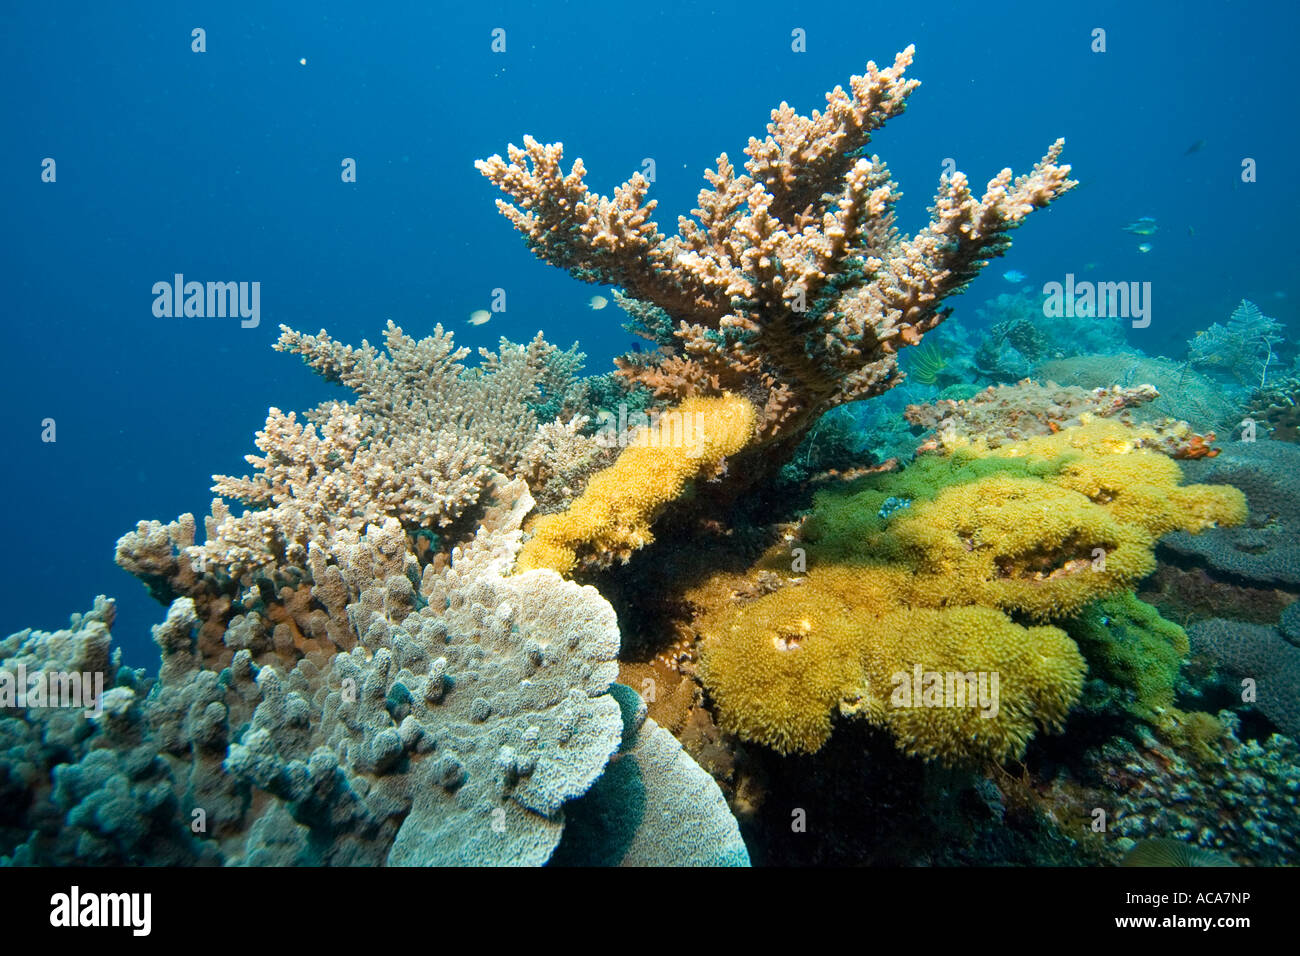 Arrecifes de coral con corales pétreos y corales blandos, Filipinas, Océano Pacífico Foto de stock